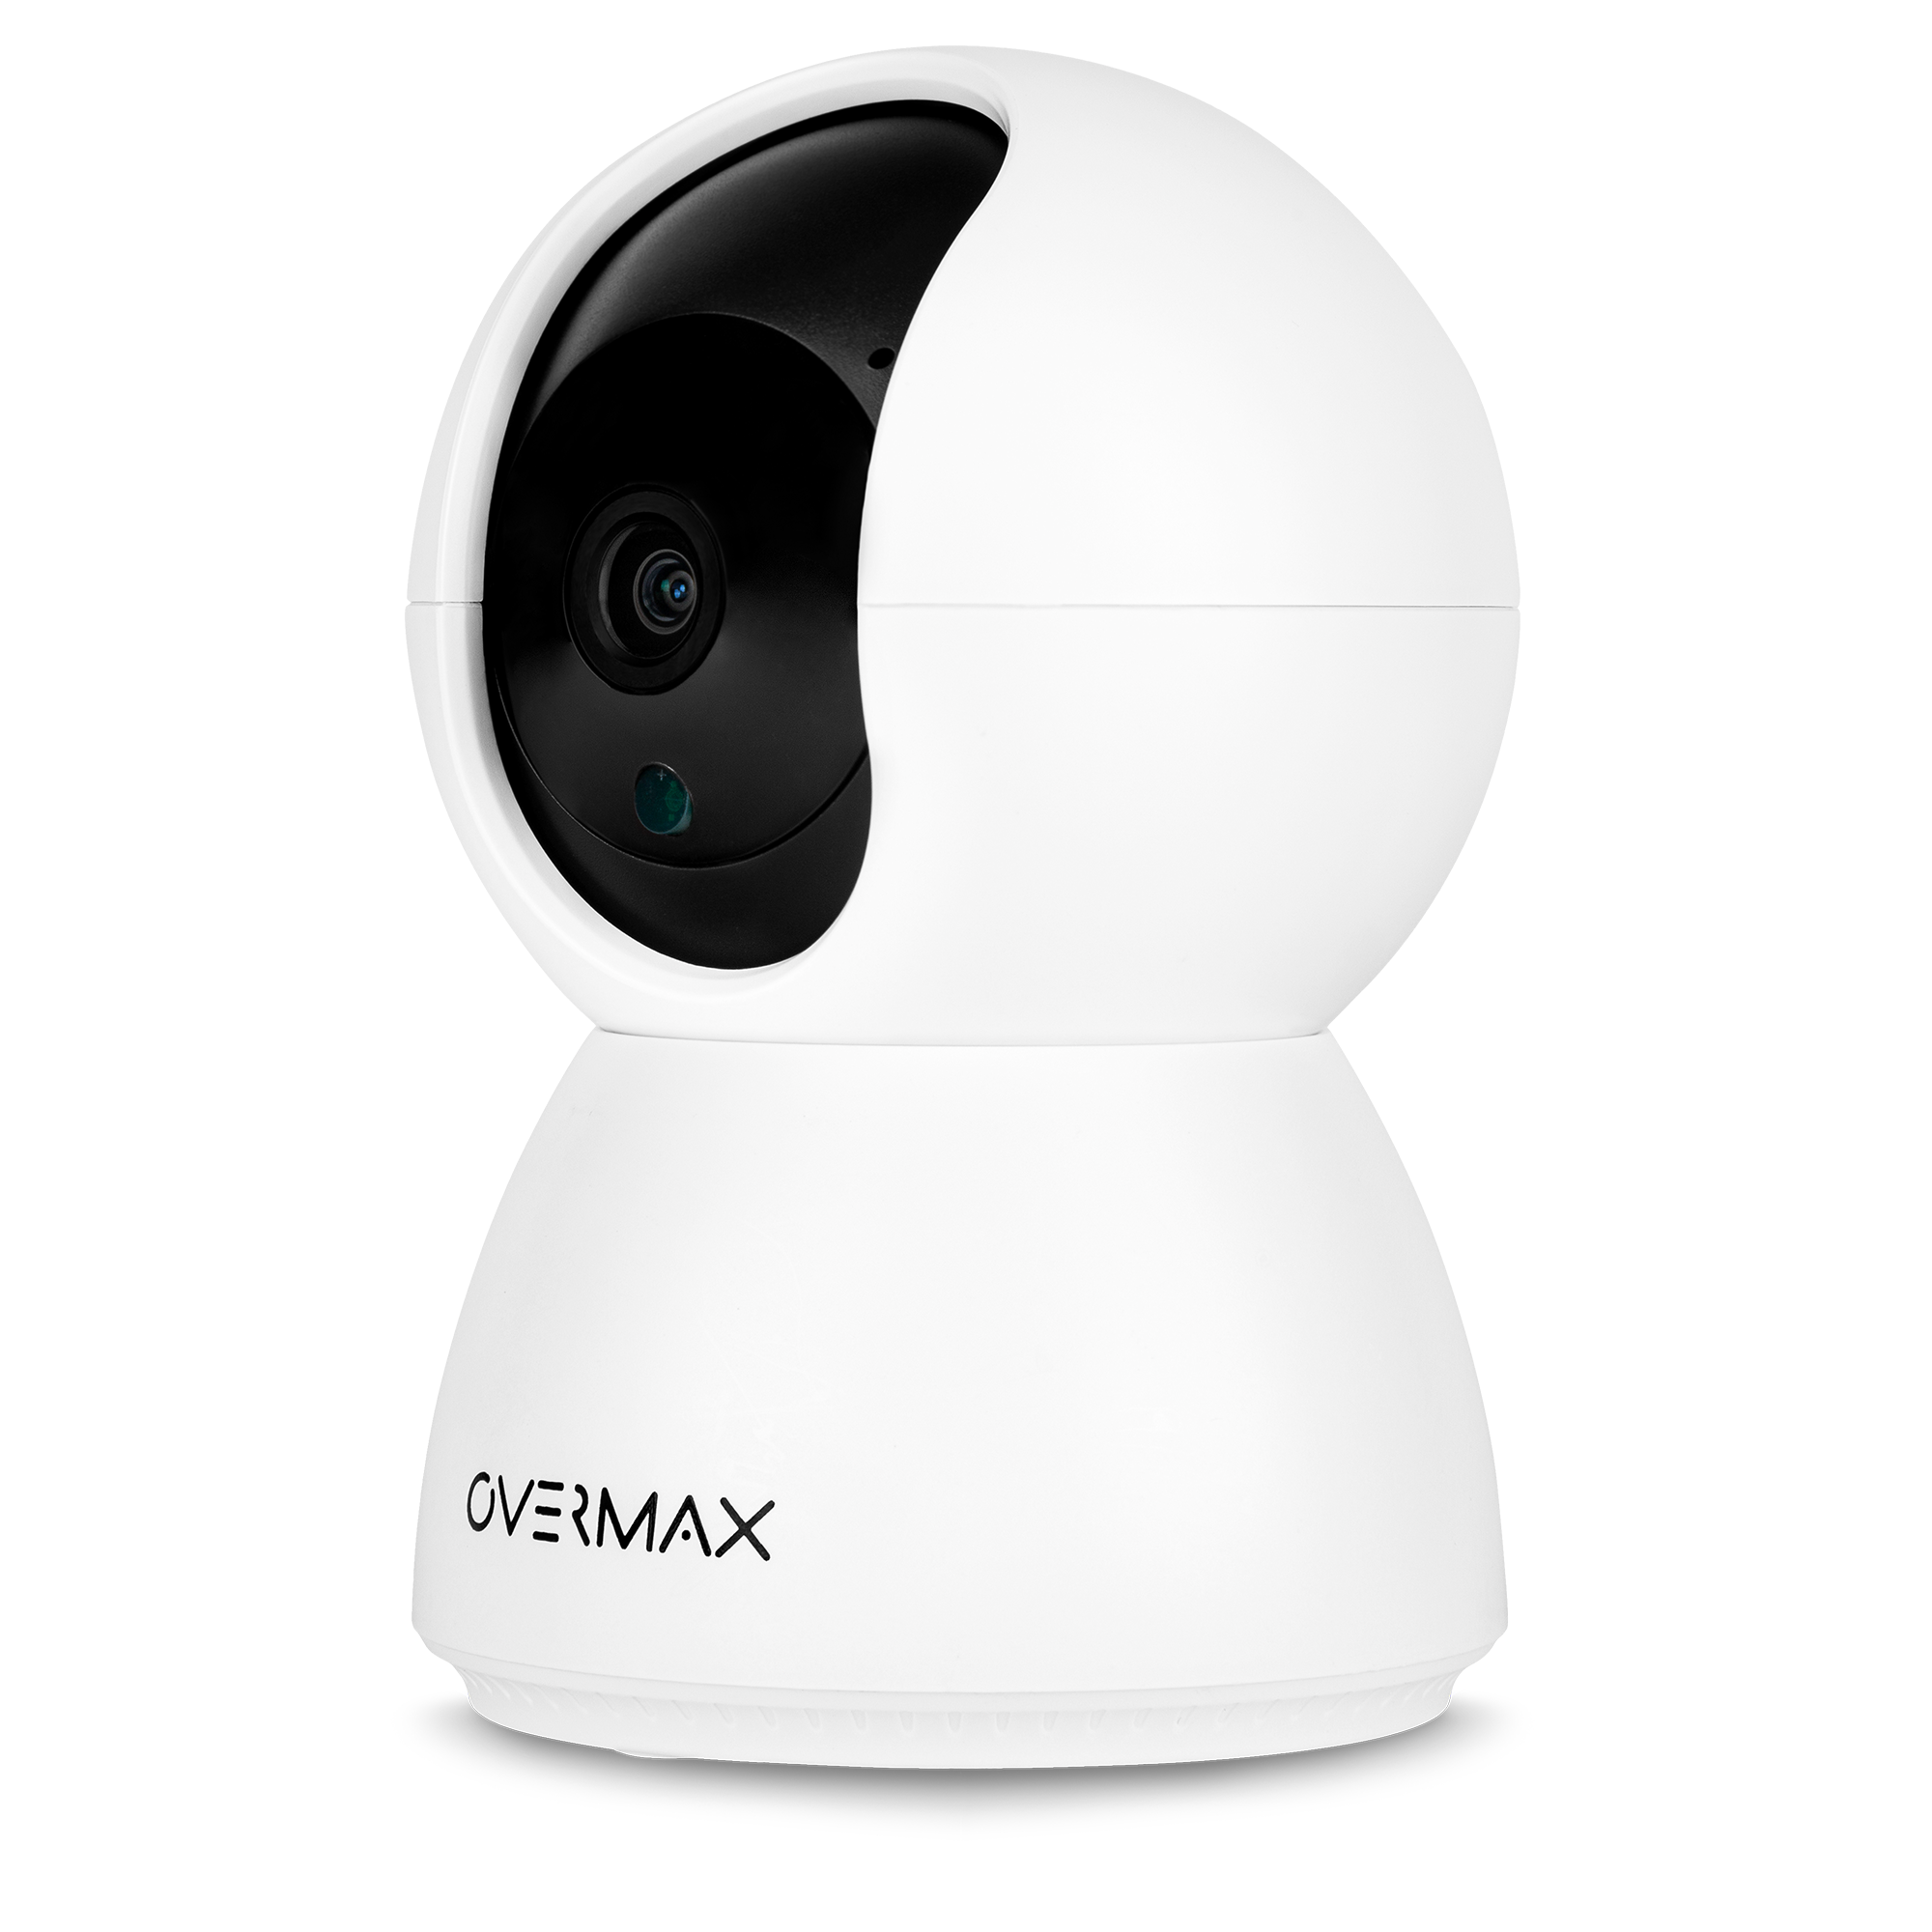 OVERMAX Camspot 2288 Auflösung px Video: Sicherheitskamera, 1288 - 2.5K x 3.7 Pro